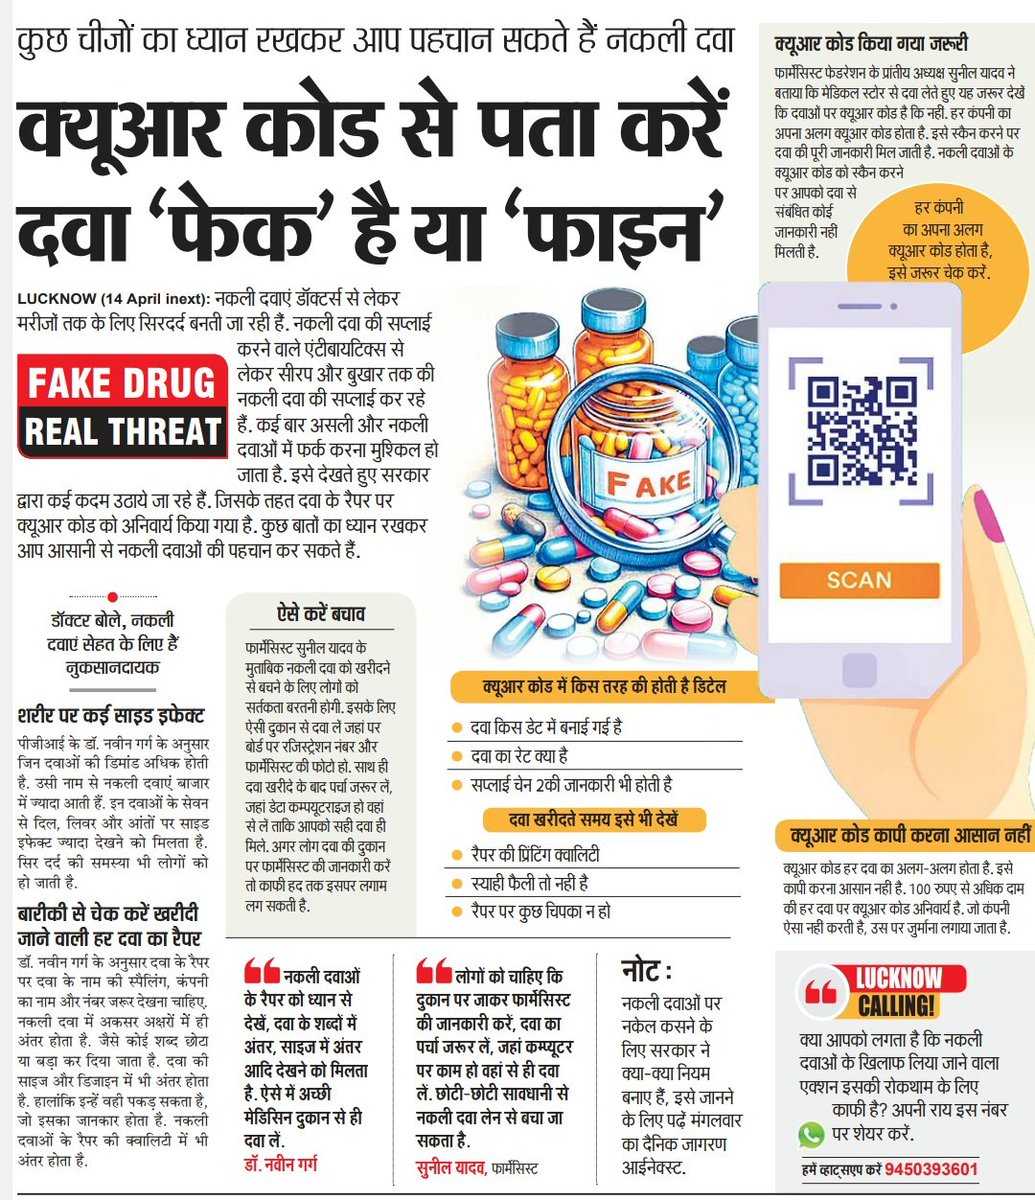 प्रिंटिंग व पैकेजिंग क्वालिटी के अलावा दवा के रैपर पर बने QR कोड को स्कैन करके असली-नकली दवा की पहचान की जा सकती है। मेडिकल स्टोर का रजिस्ट्रेशन नंबर और फार्मासिस्ट की तस्वीर जरूर चेक करें। दवा का कंप्यूटराइज्ड बिल भी जरूर लें। 

#LucknowNews #FakeDrugRealThreat @brajeshpathakup